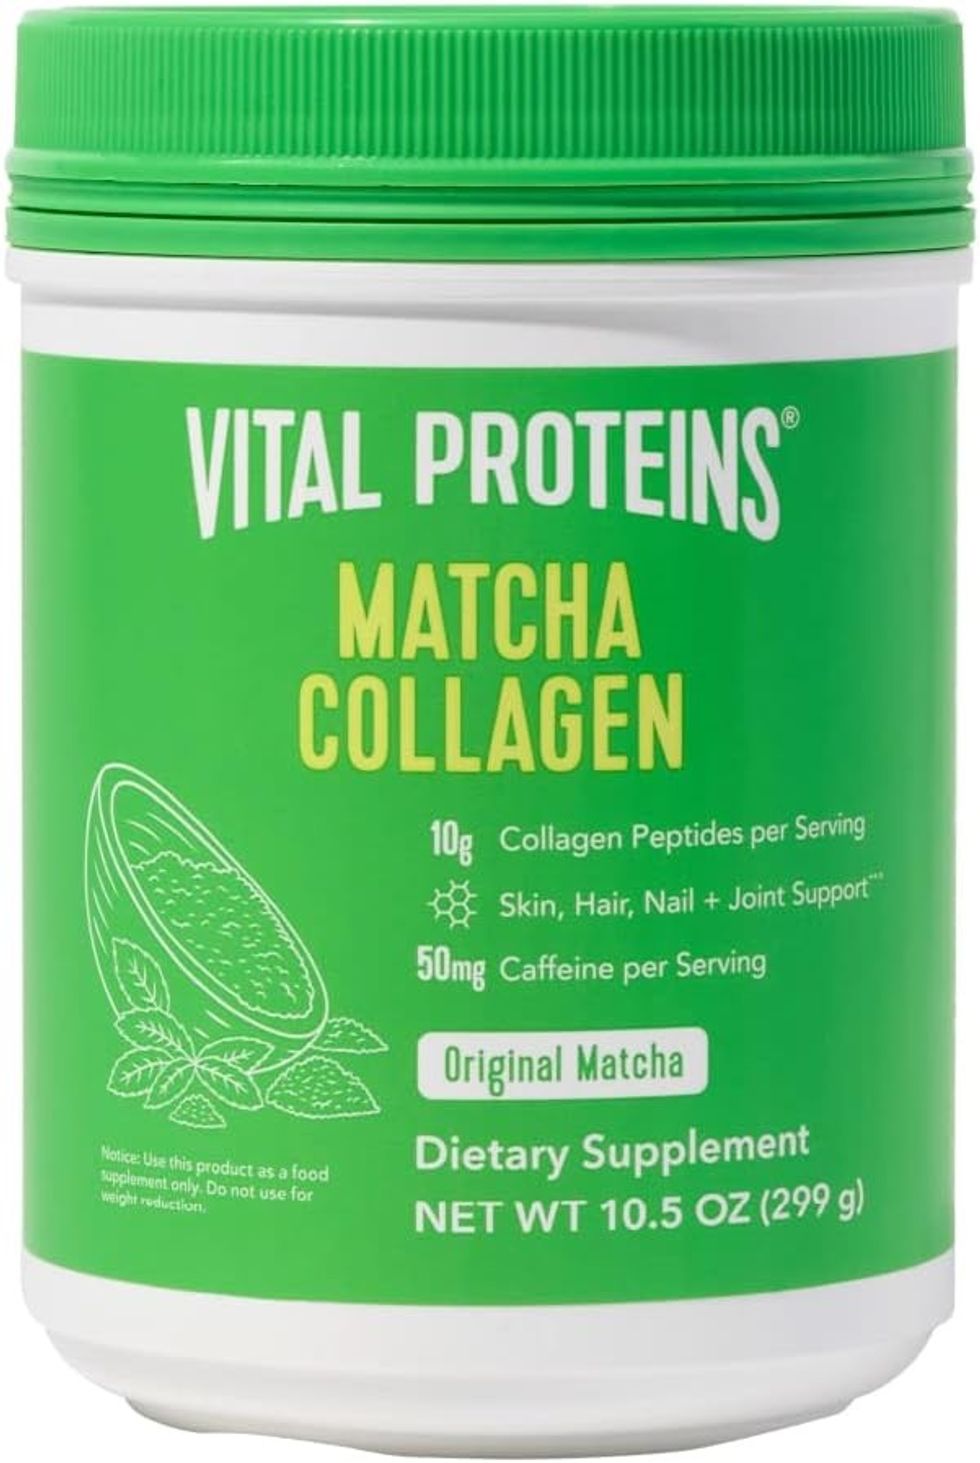 Vital Proteins Matcha Collagen Peptides Powder Supplement